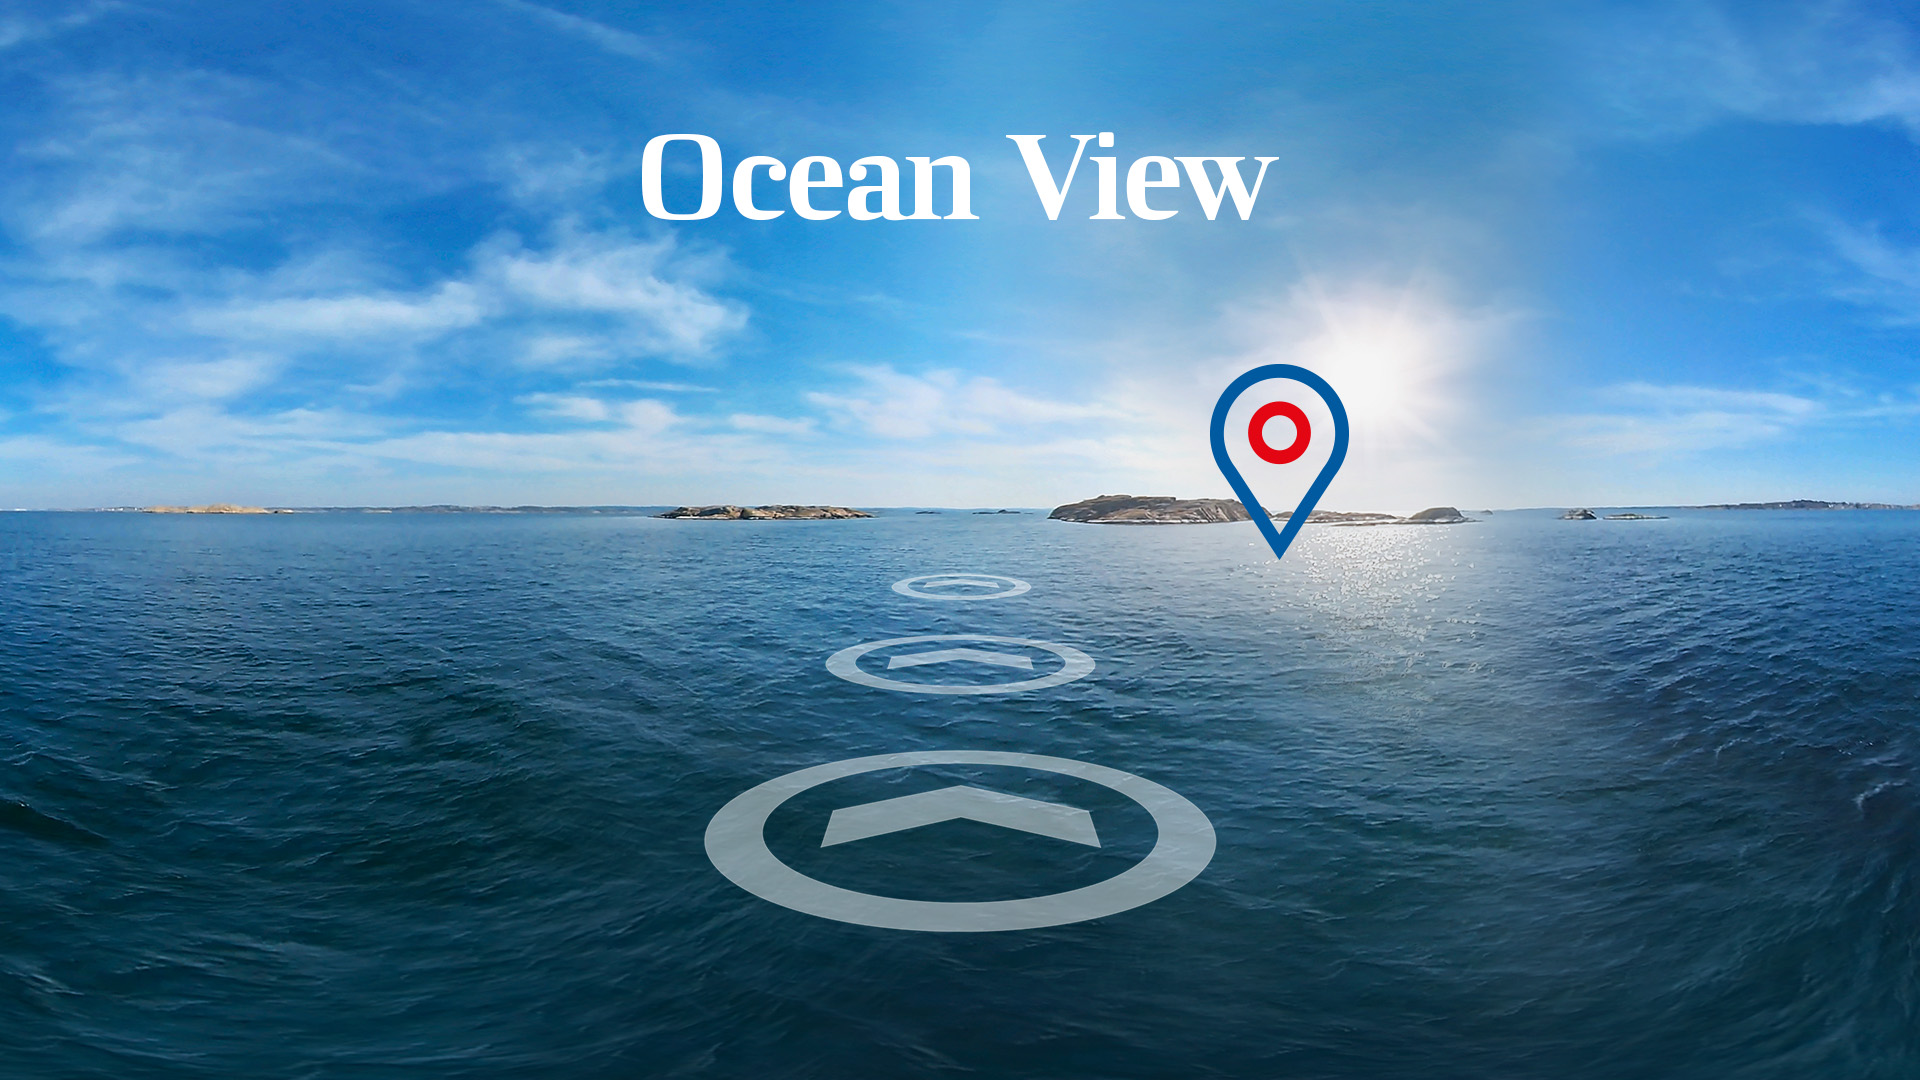 Ocean_View_Key_visual